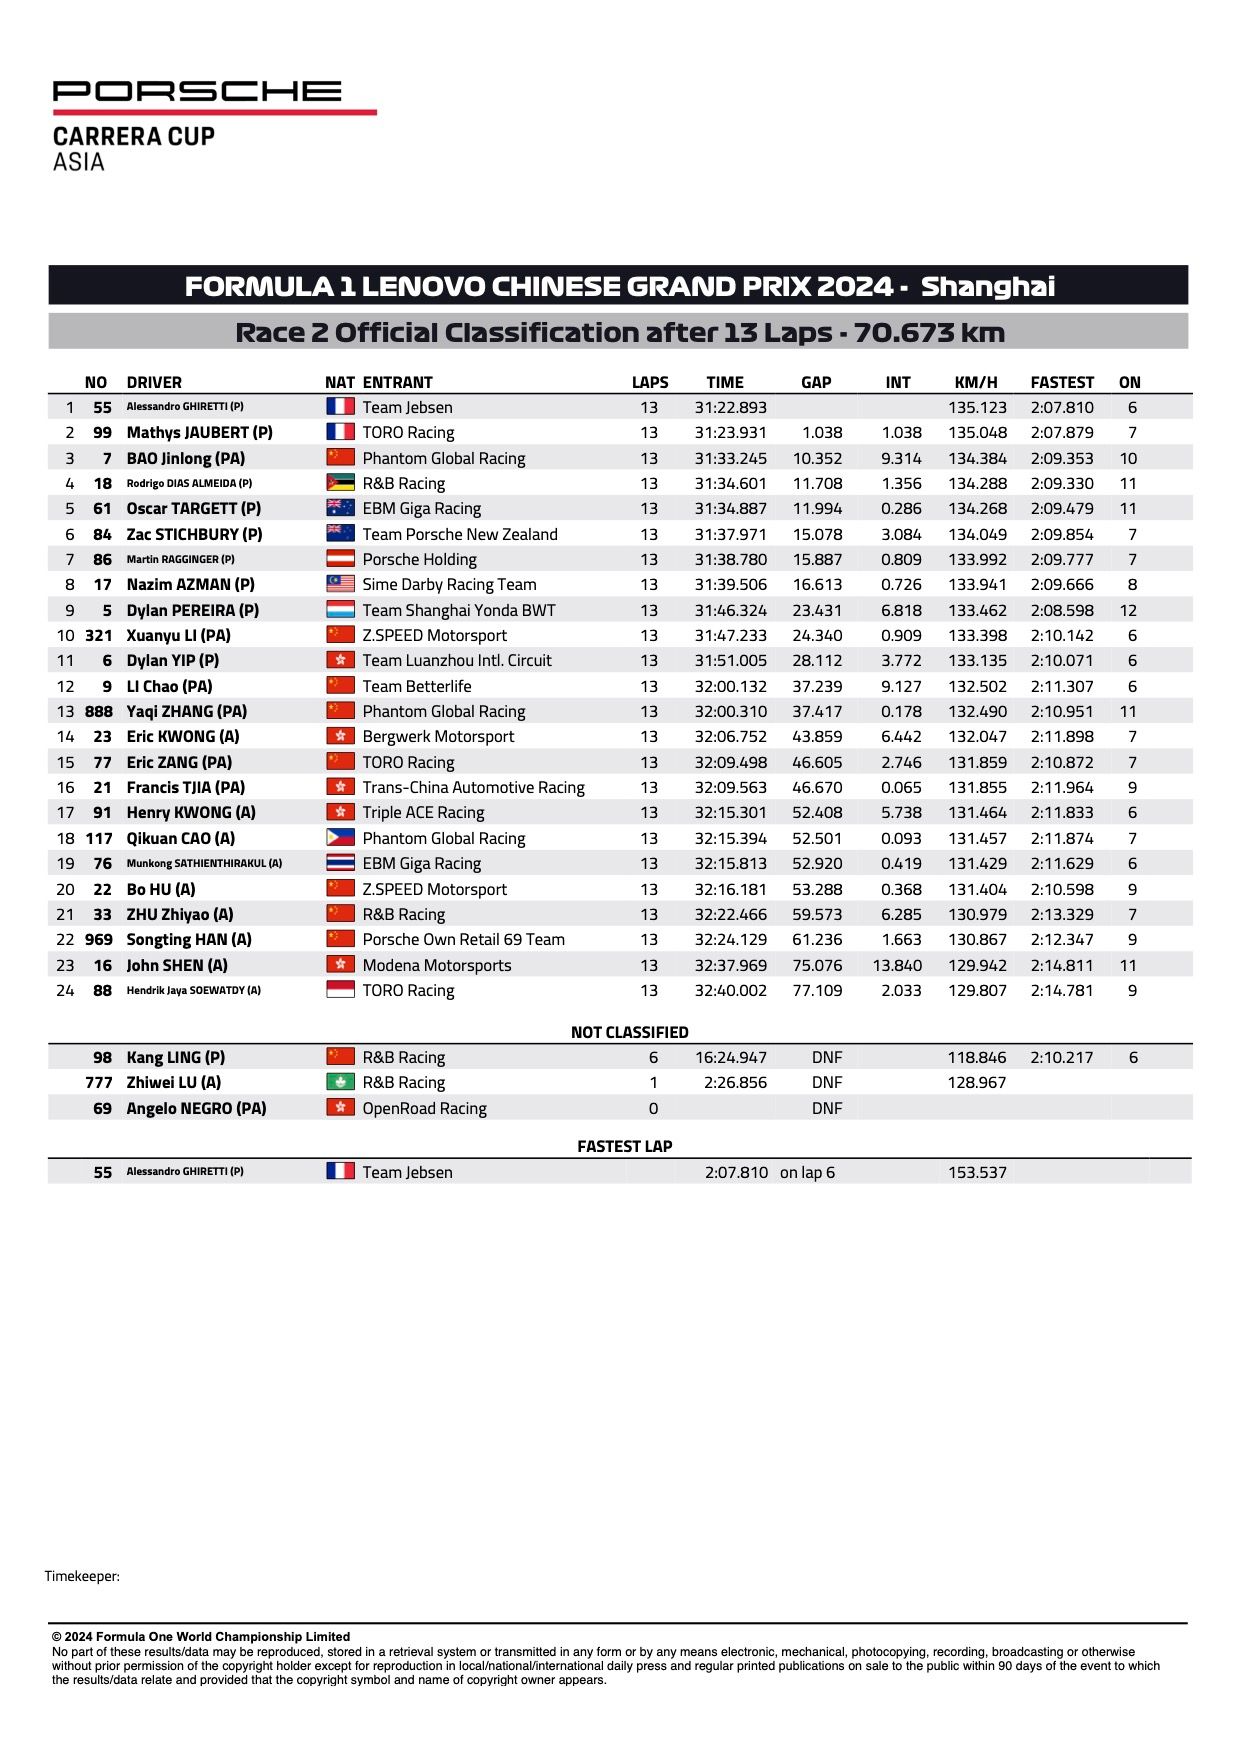 Resultados oficiales de las rondas 1 y 2 de la carrera 2 de la Porsche Carrera Cup Asia 2024 Shanghai